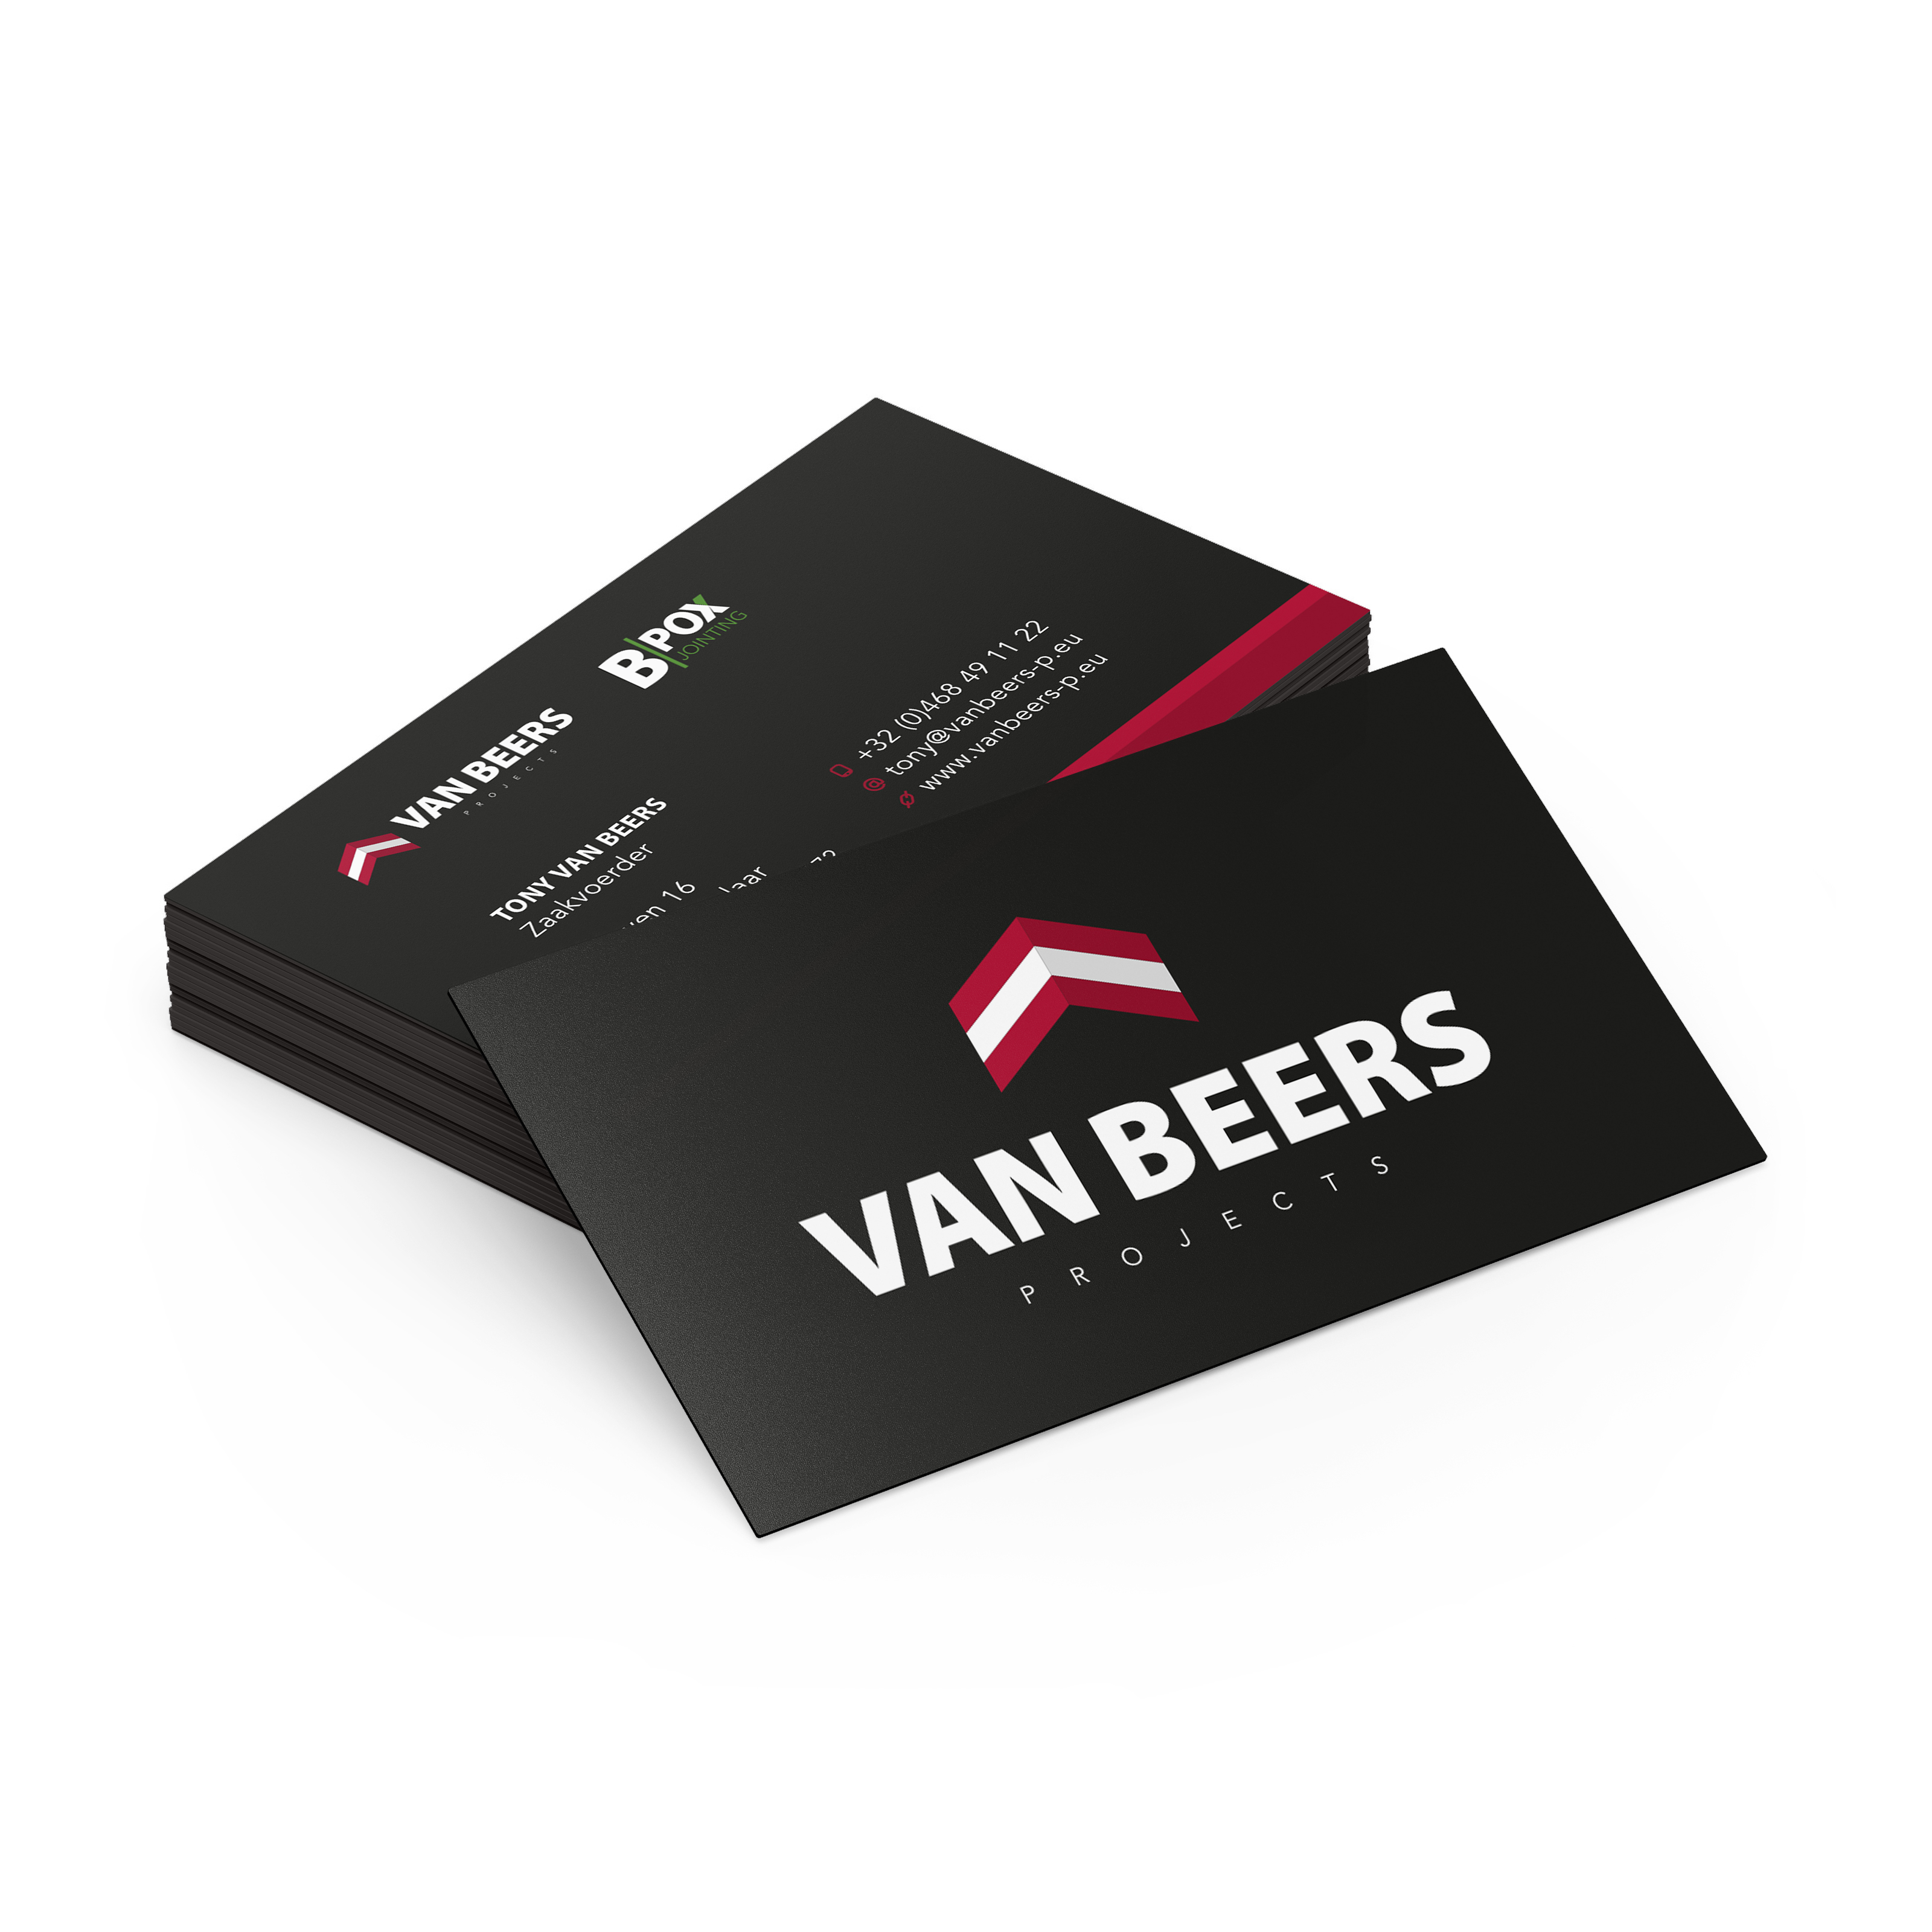 Van Beers Projects